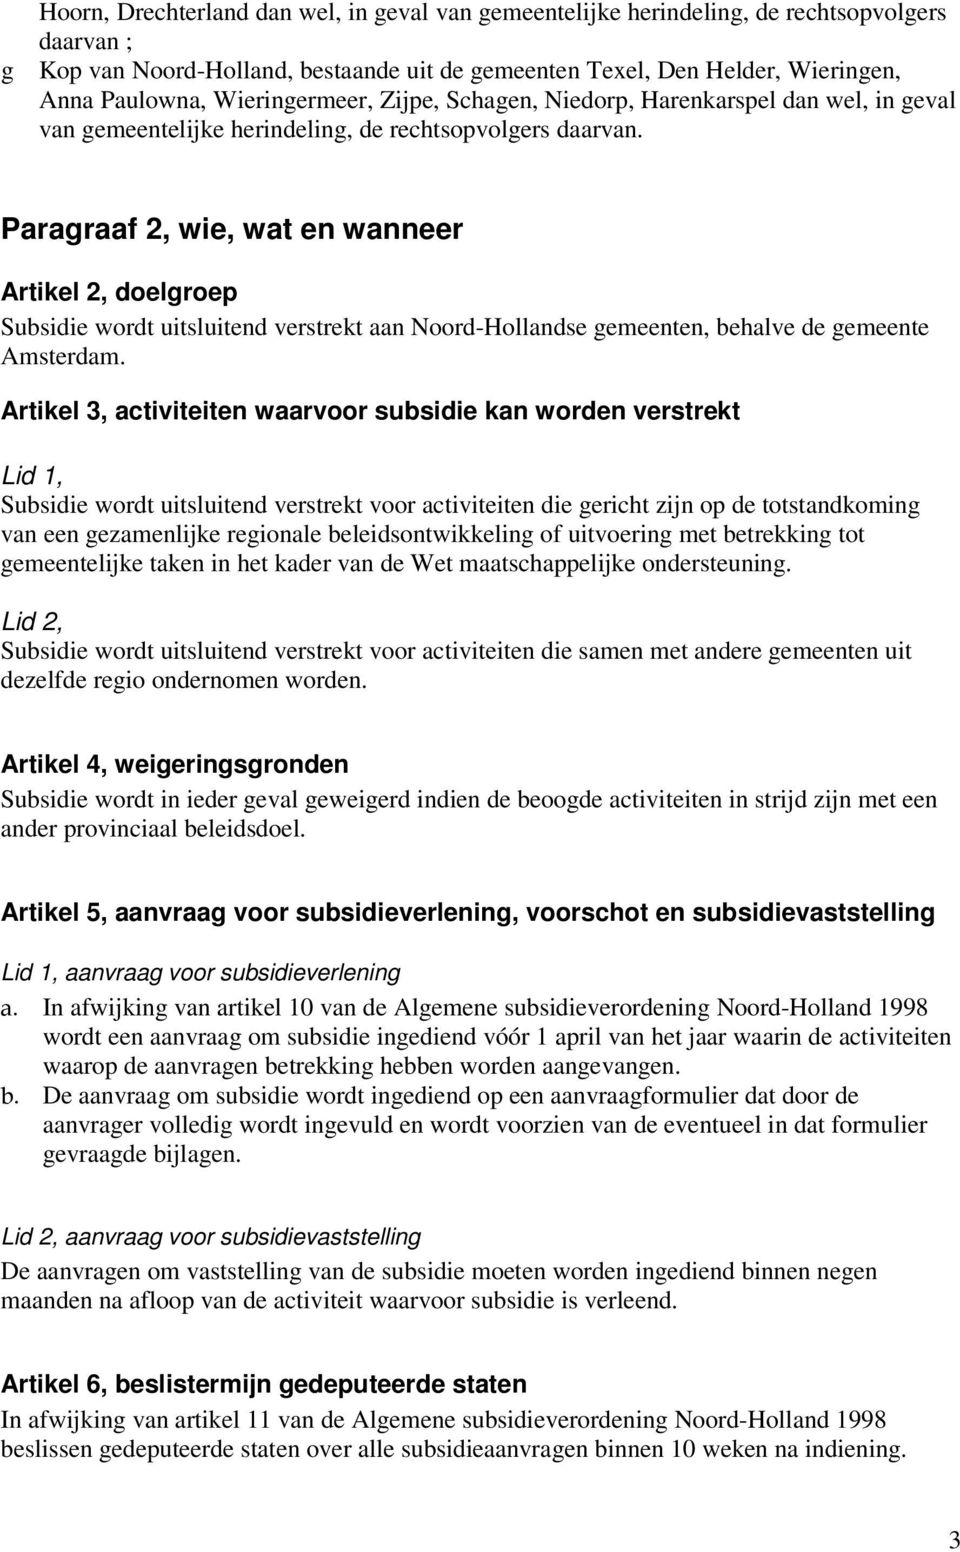 Paragraaf 2, wie, wat en wanneer Artikel 2, doelgroep Subsidie wordt uitsluitend verstrekt aan Noord-Hollandse gemeenten, behalve de gemeente Amsterdam.